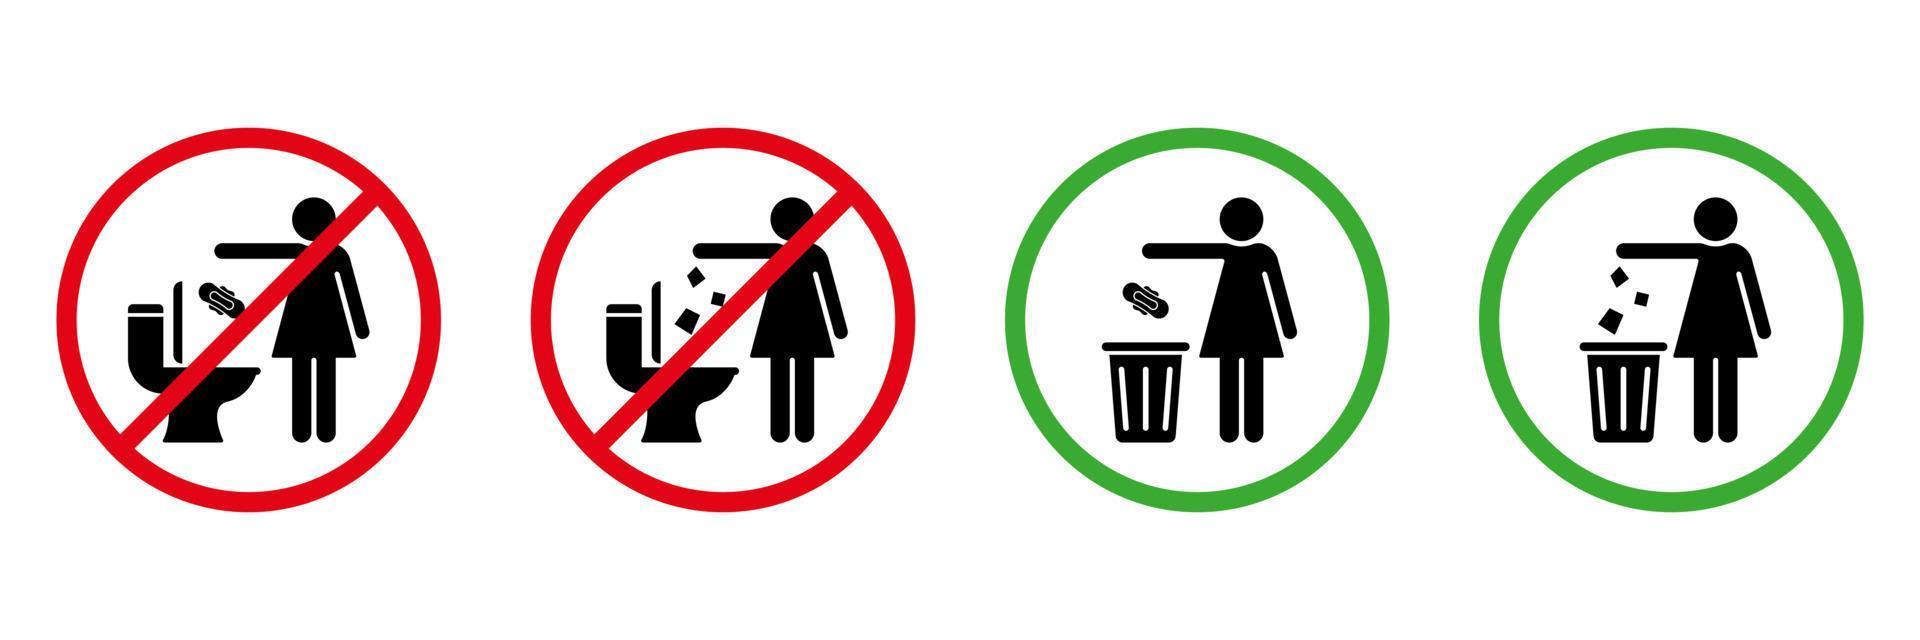 S'il vous plaît non affleurer litière dans toilette signe ensemble. permis jeter serviette de table, papier, tampons, serviette dans déchets panier silhouette icône. S'il vous plaît jeter litière dans poubelle, non dans toilette pictogramme. isolé vecteur illustration.